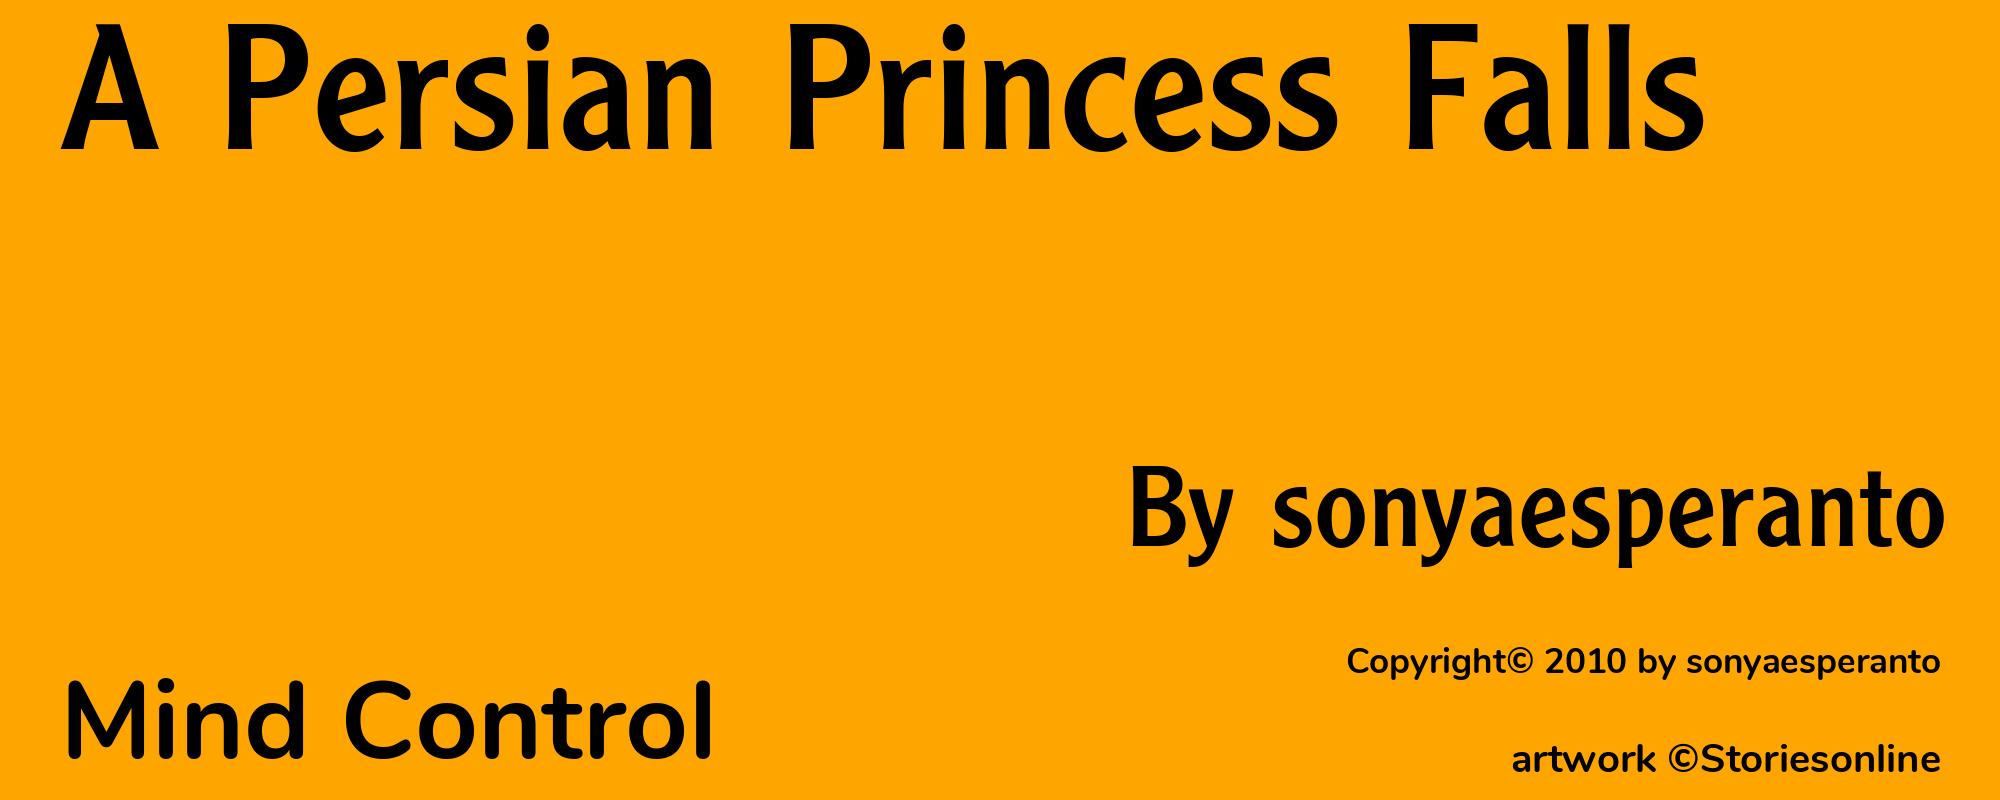 A Persian Princess Falls - Cover